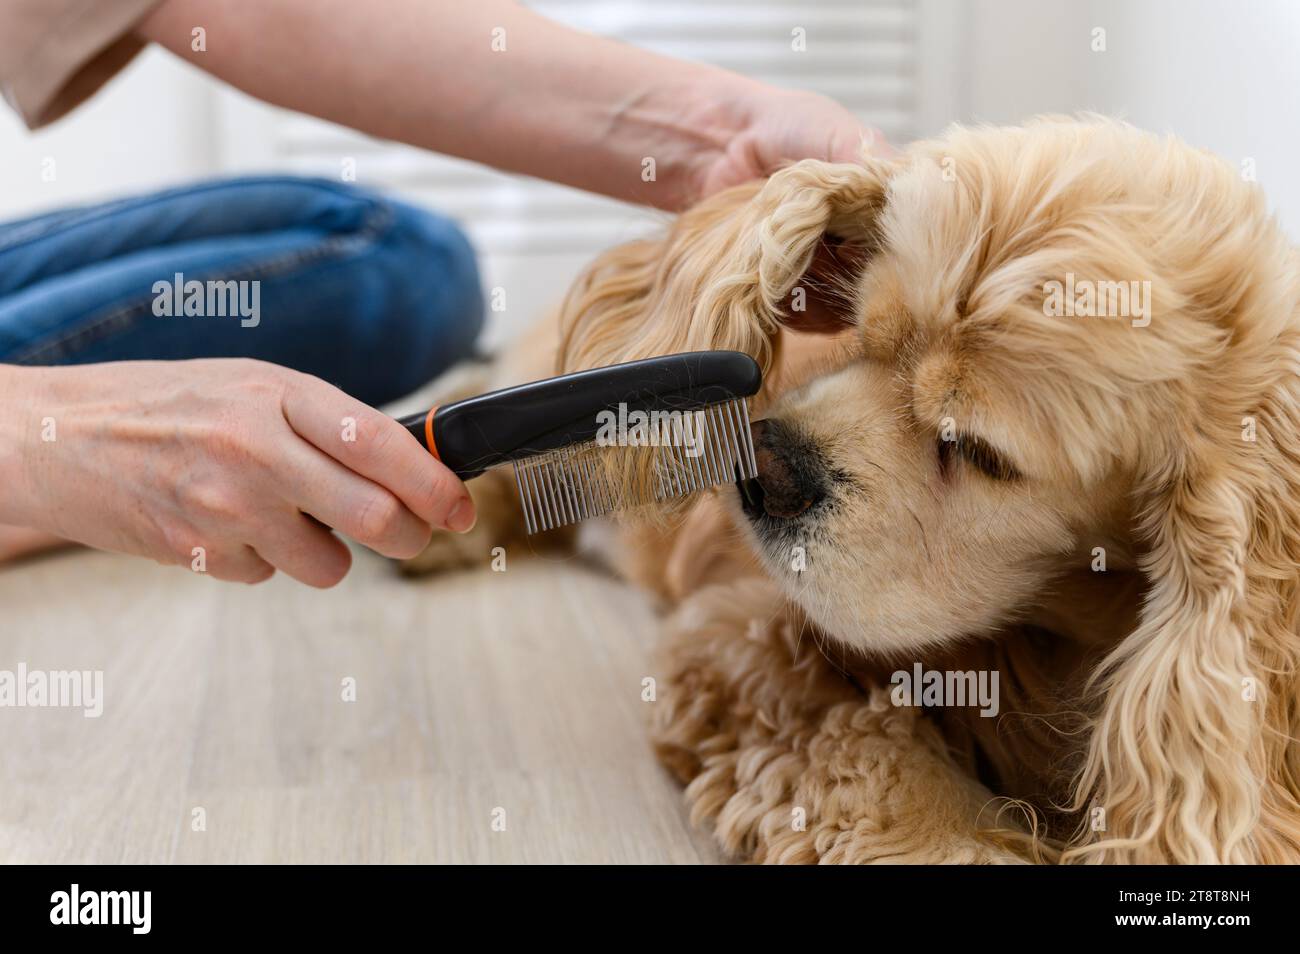 Une jeune femme peigne son chien épagneux de race pure. Gros plan d'un sabot. Banque D'Images